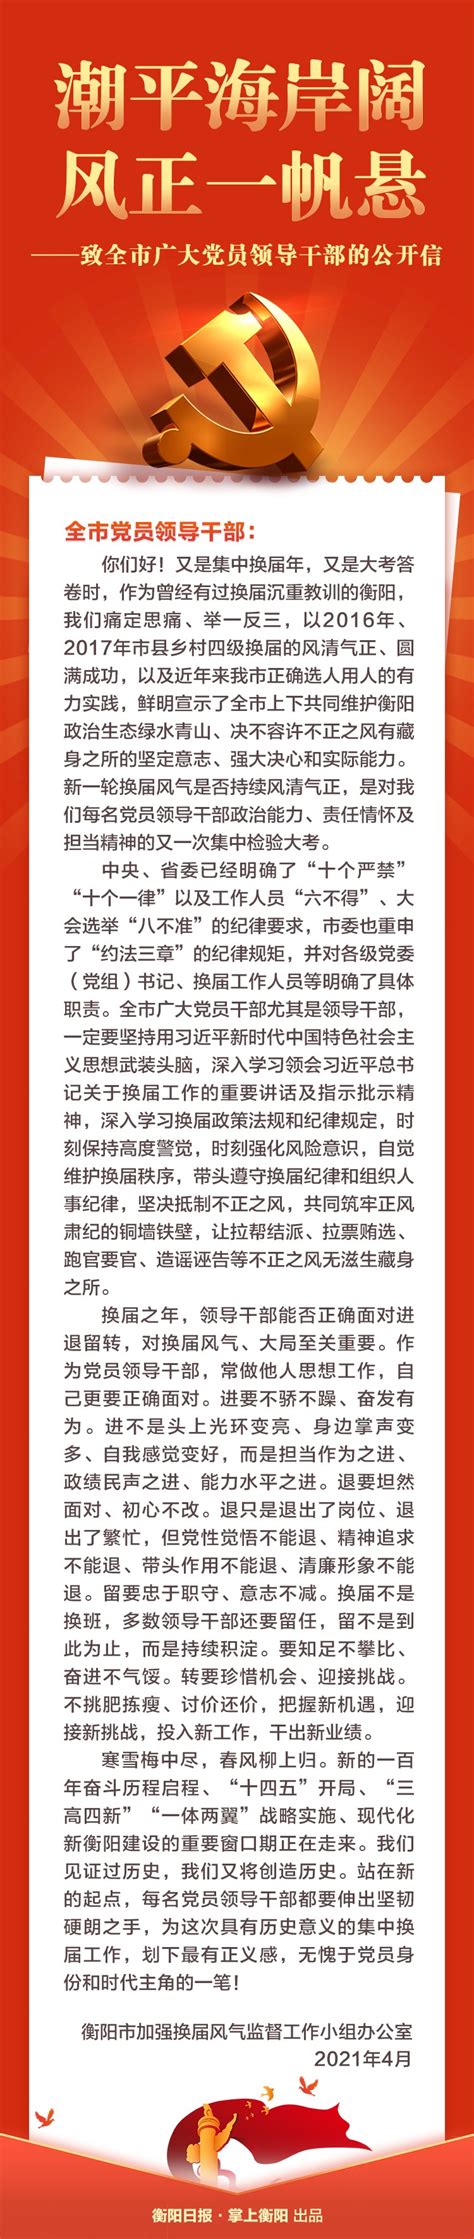 衡阳市人民政府门户网站-这里有一封致全市广大党员领导干部的公开信，请查收